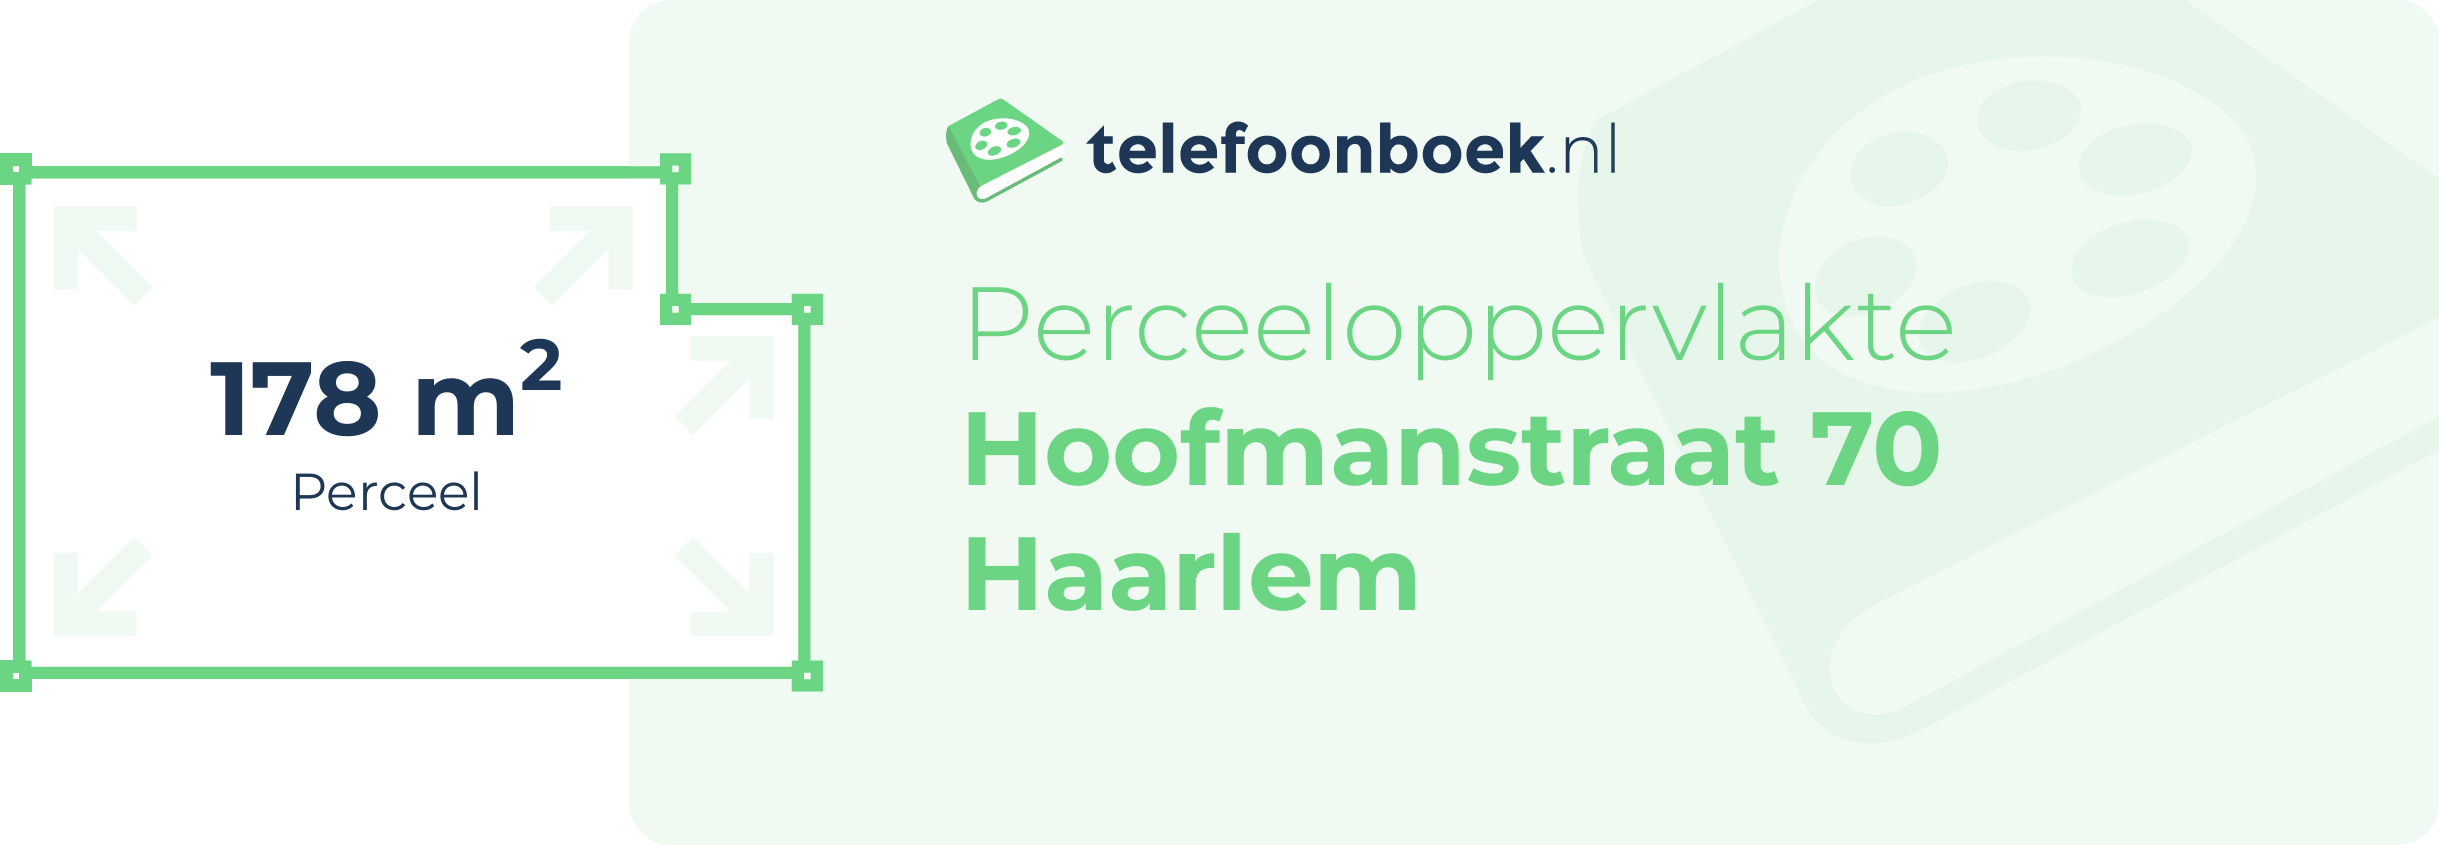 Perceeloppervlakte Hoofmanstraat 70 Haarlem